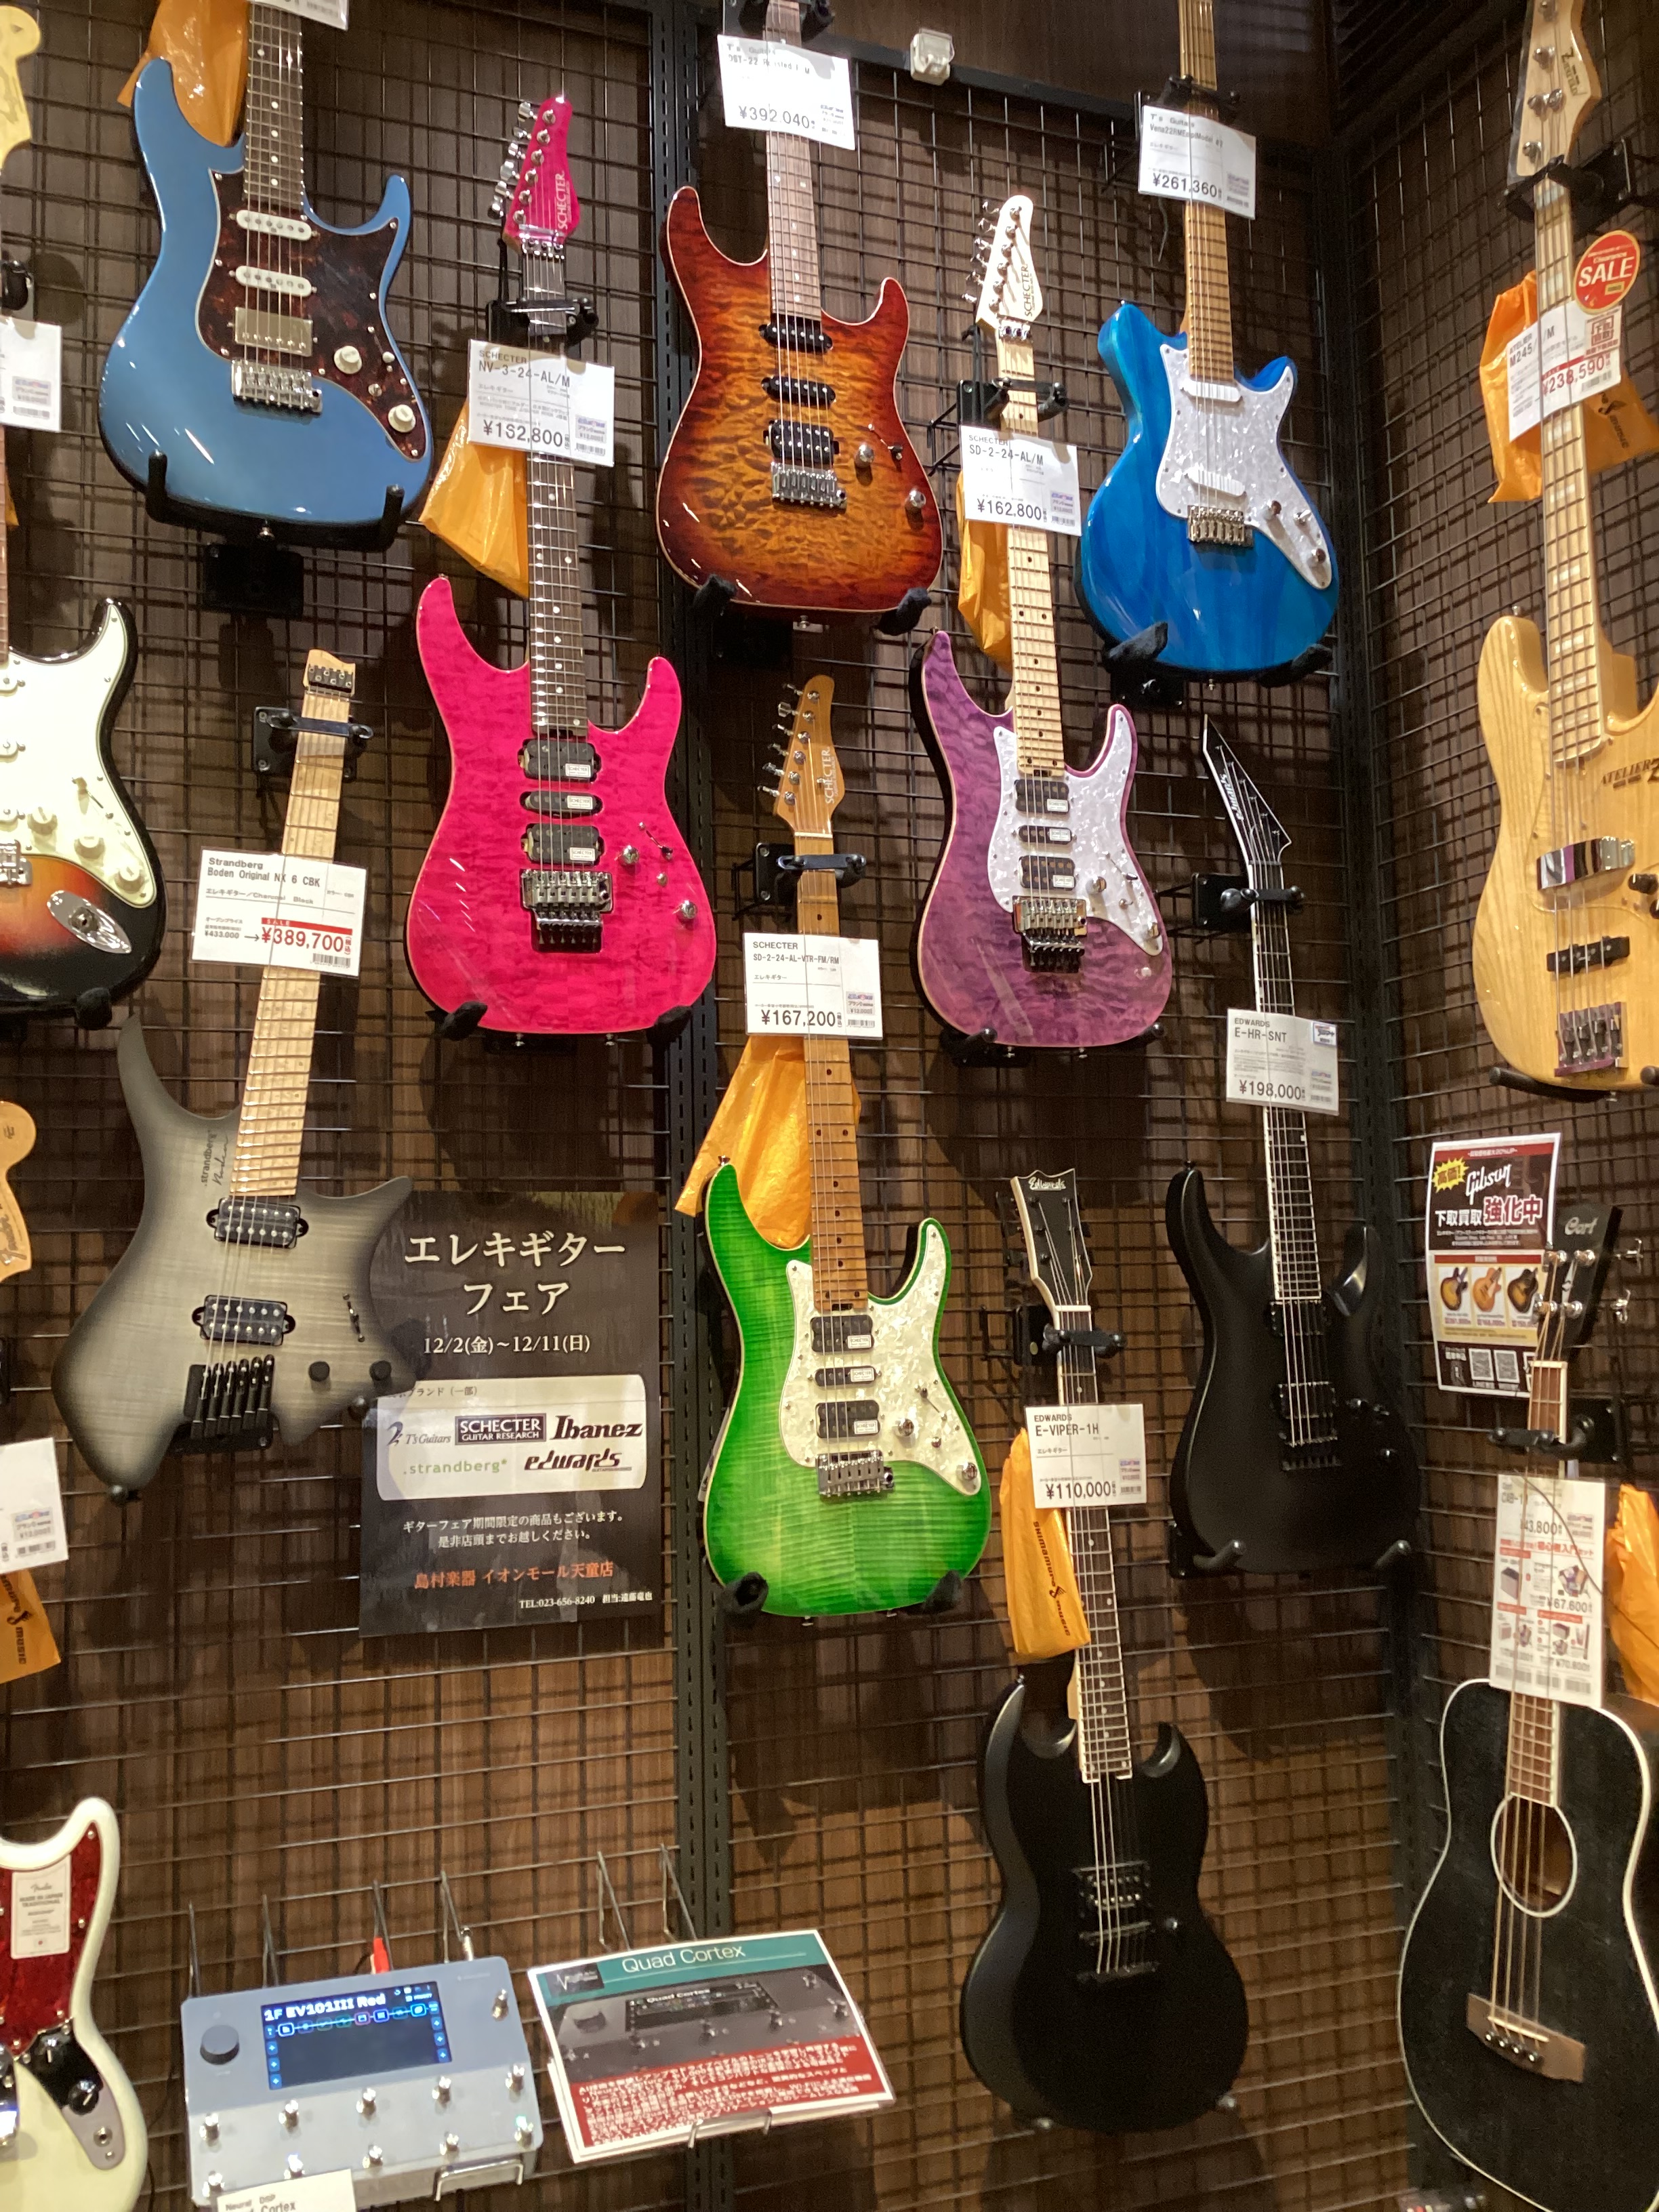 CONTENTSイオンモール天童店ではエレキギターフェアを開催中！イオンモール天童店ではエレキギターフェアを開催中！ 店頭にてエレキギターを大量展示しております！ ギターフェア開催中限定商品もございますので是非店頭までお越しください！